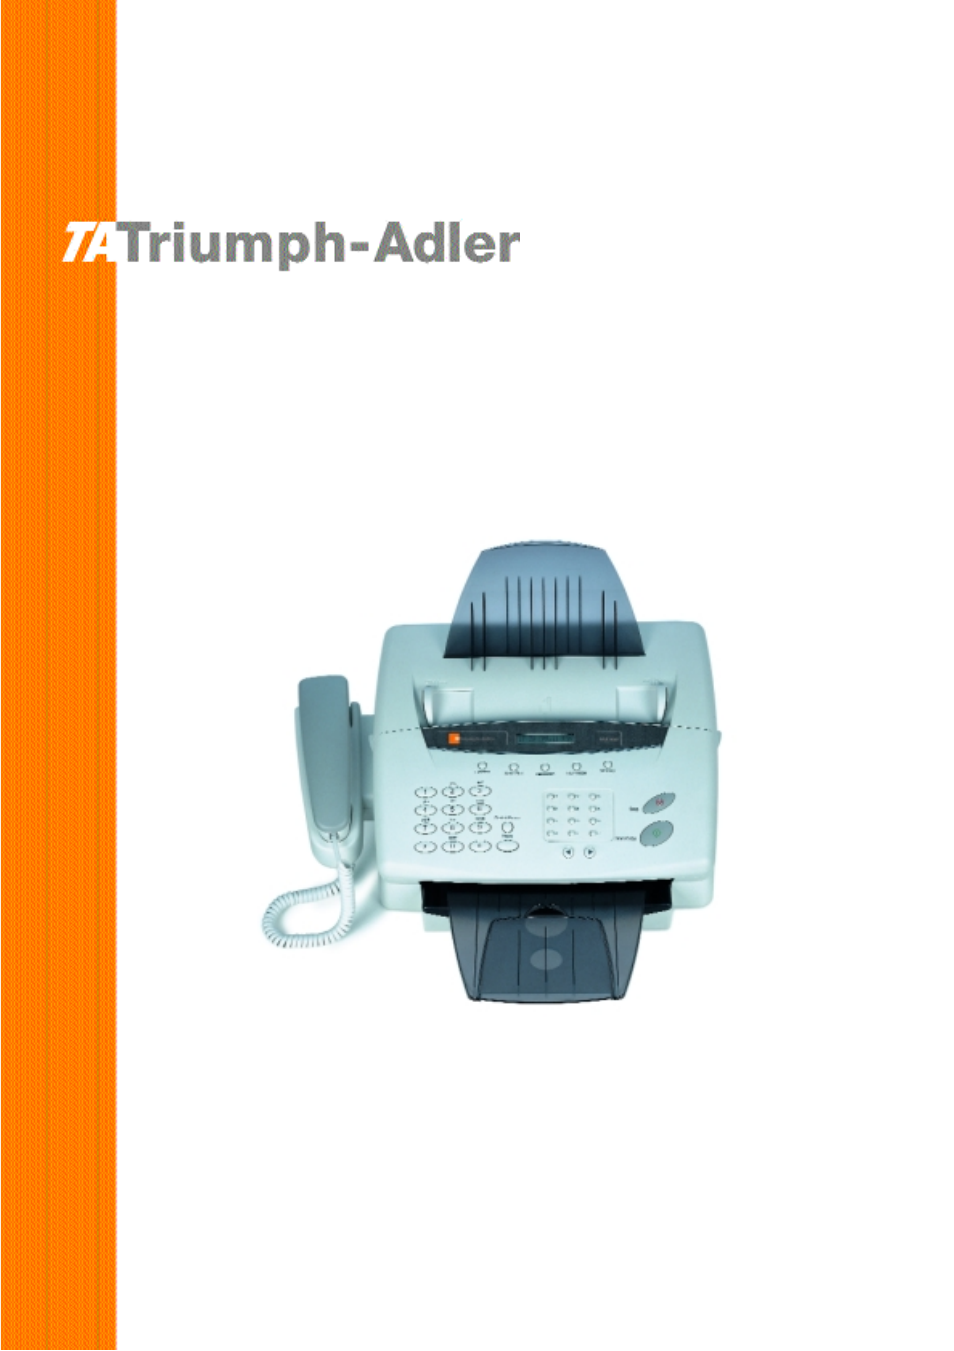 TA Triumph-Adler FAX 920 Manuel d'utilisation | Pages: 36